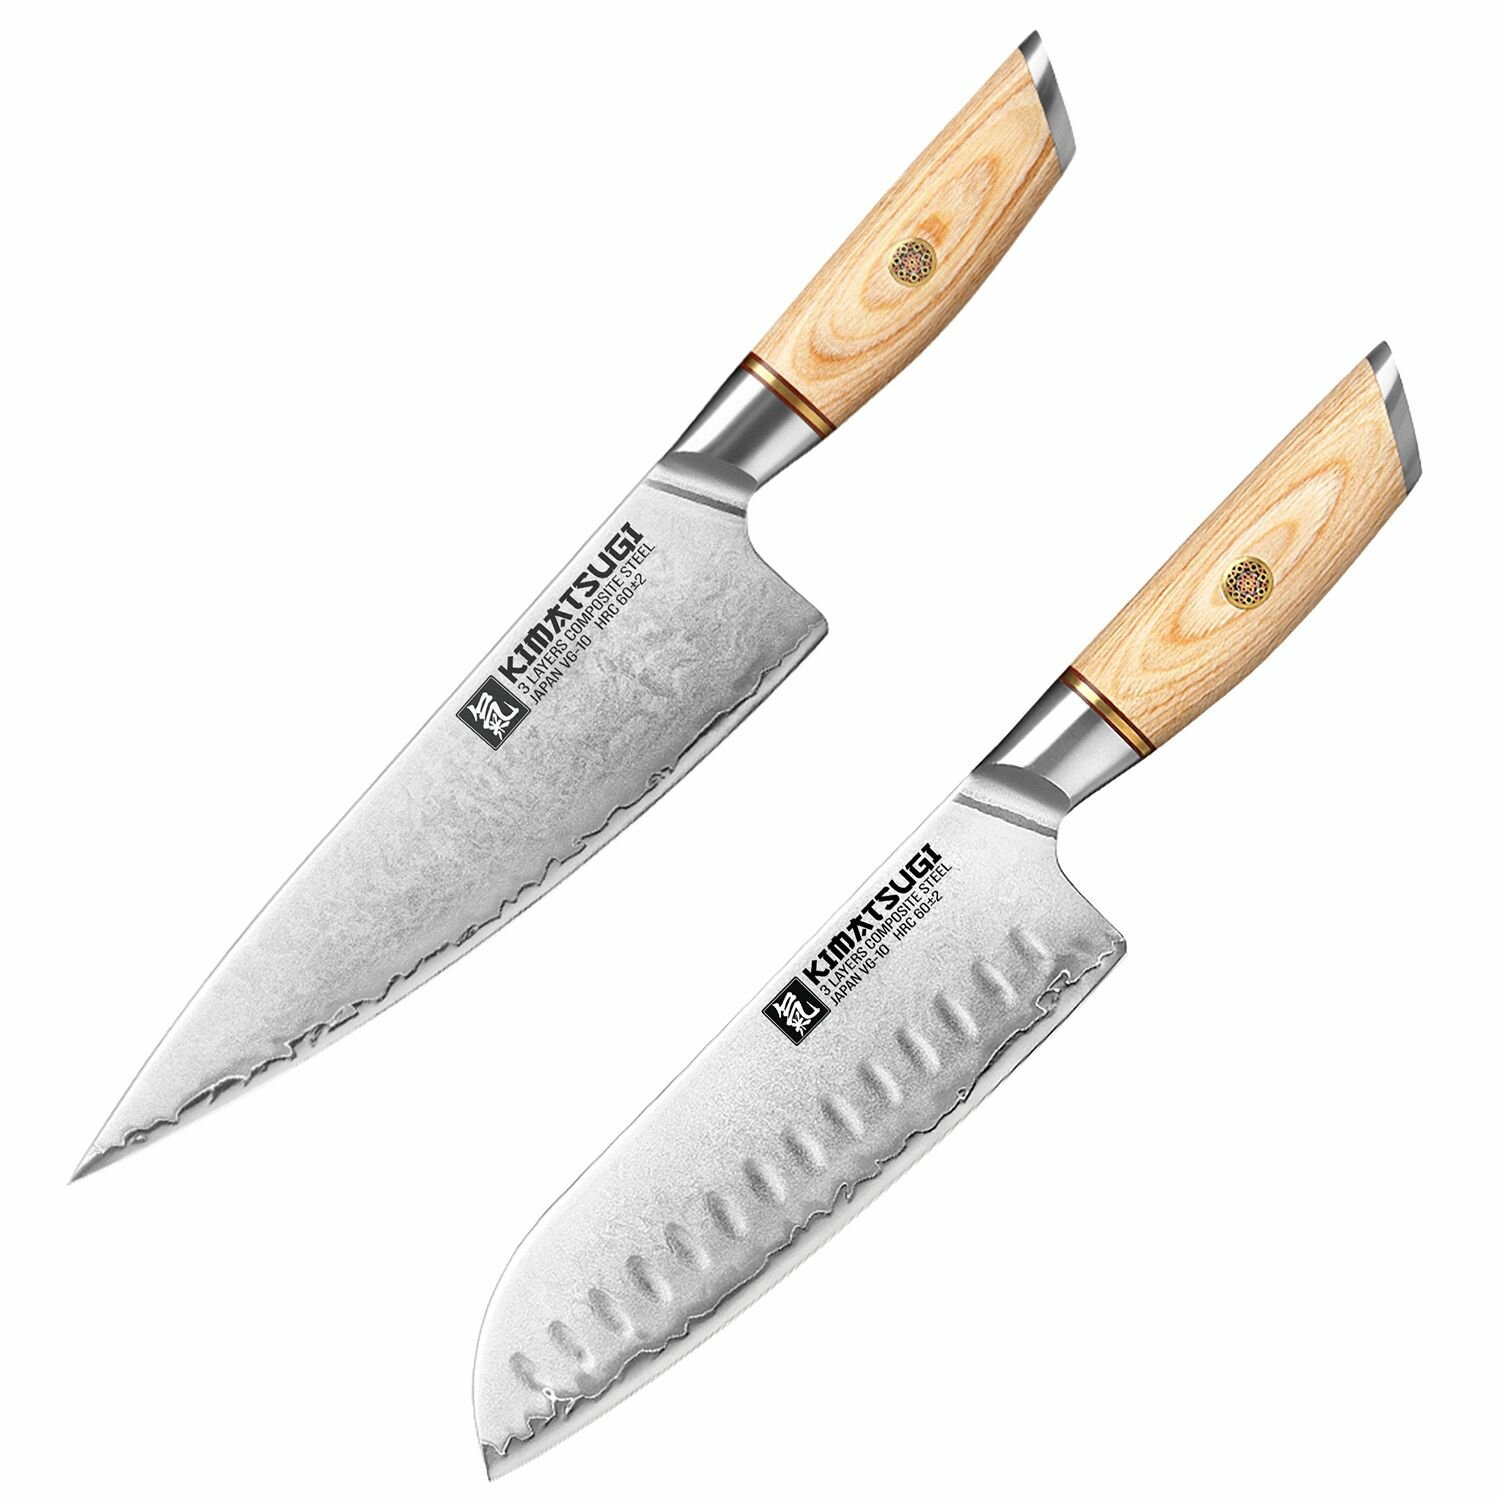 Набор кухонных японских ножей Kimatsugi Yorokobi. Сантоку и Шеф. Дамасская сталь 3 слоя. VG-10 в обкладках. Каждый нож в подарочной коробке